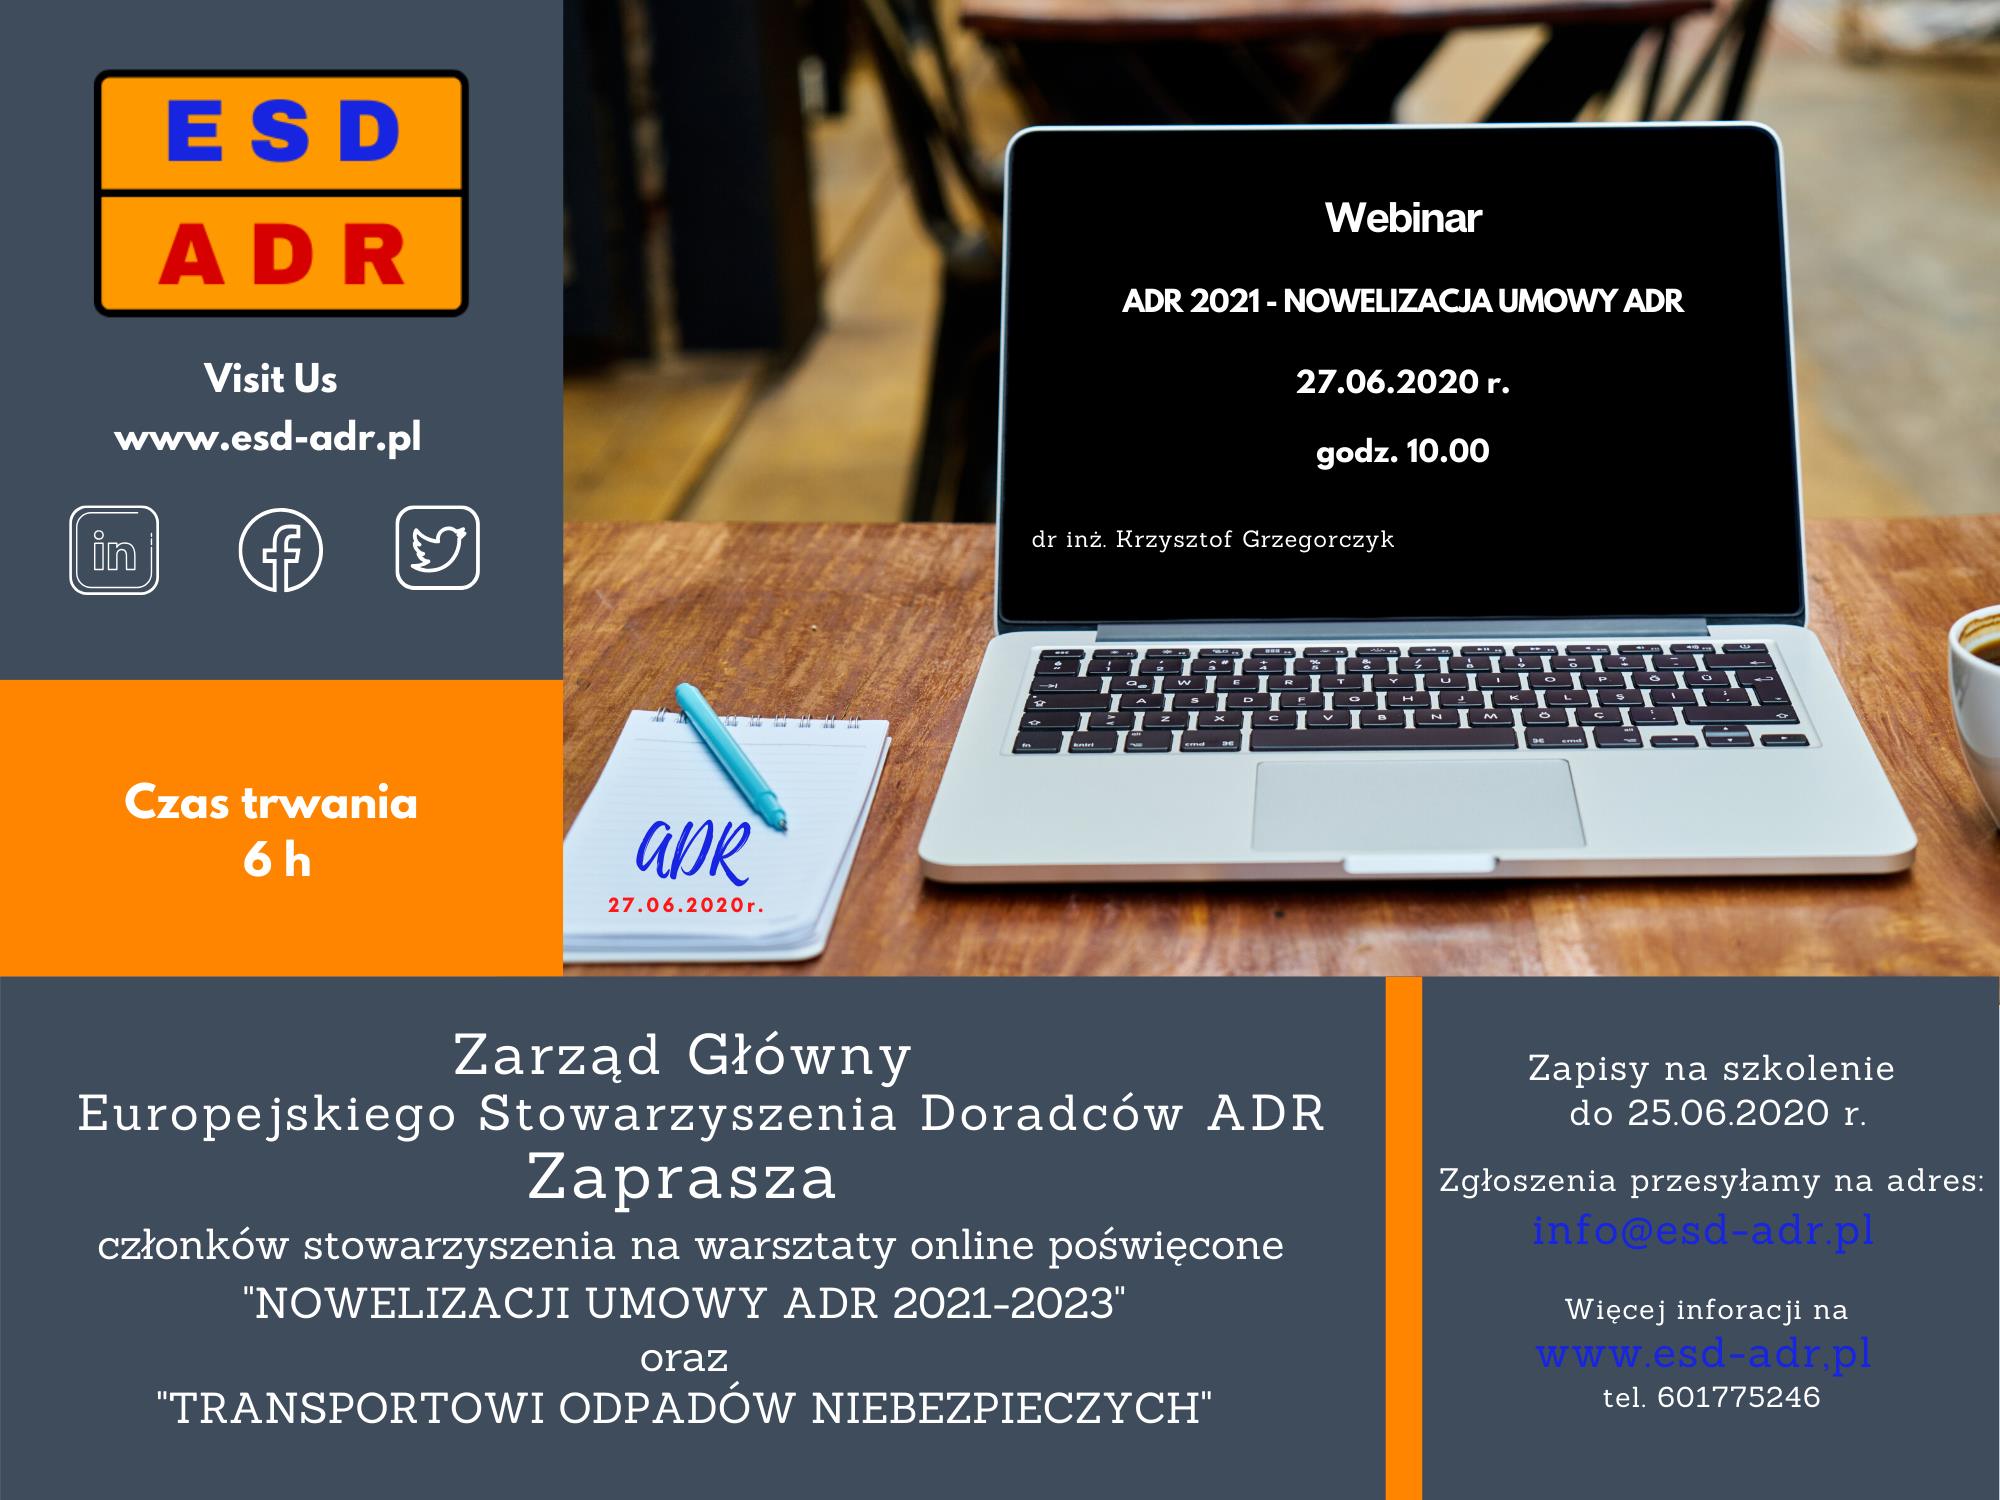 webinar ADR 2021 - nowelizacja umowy ADR